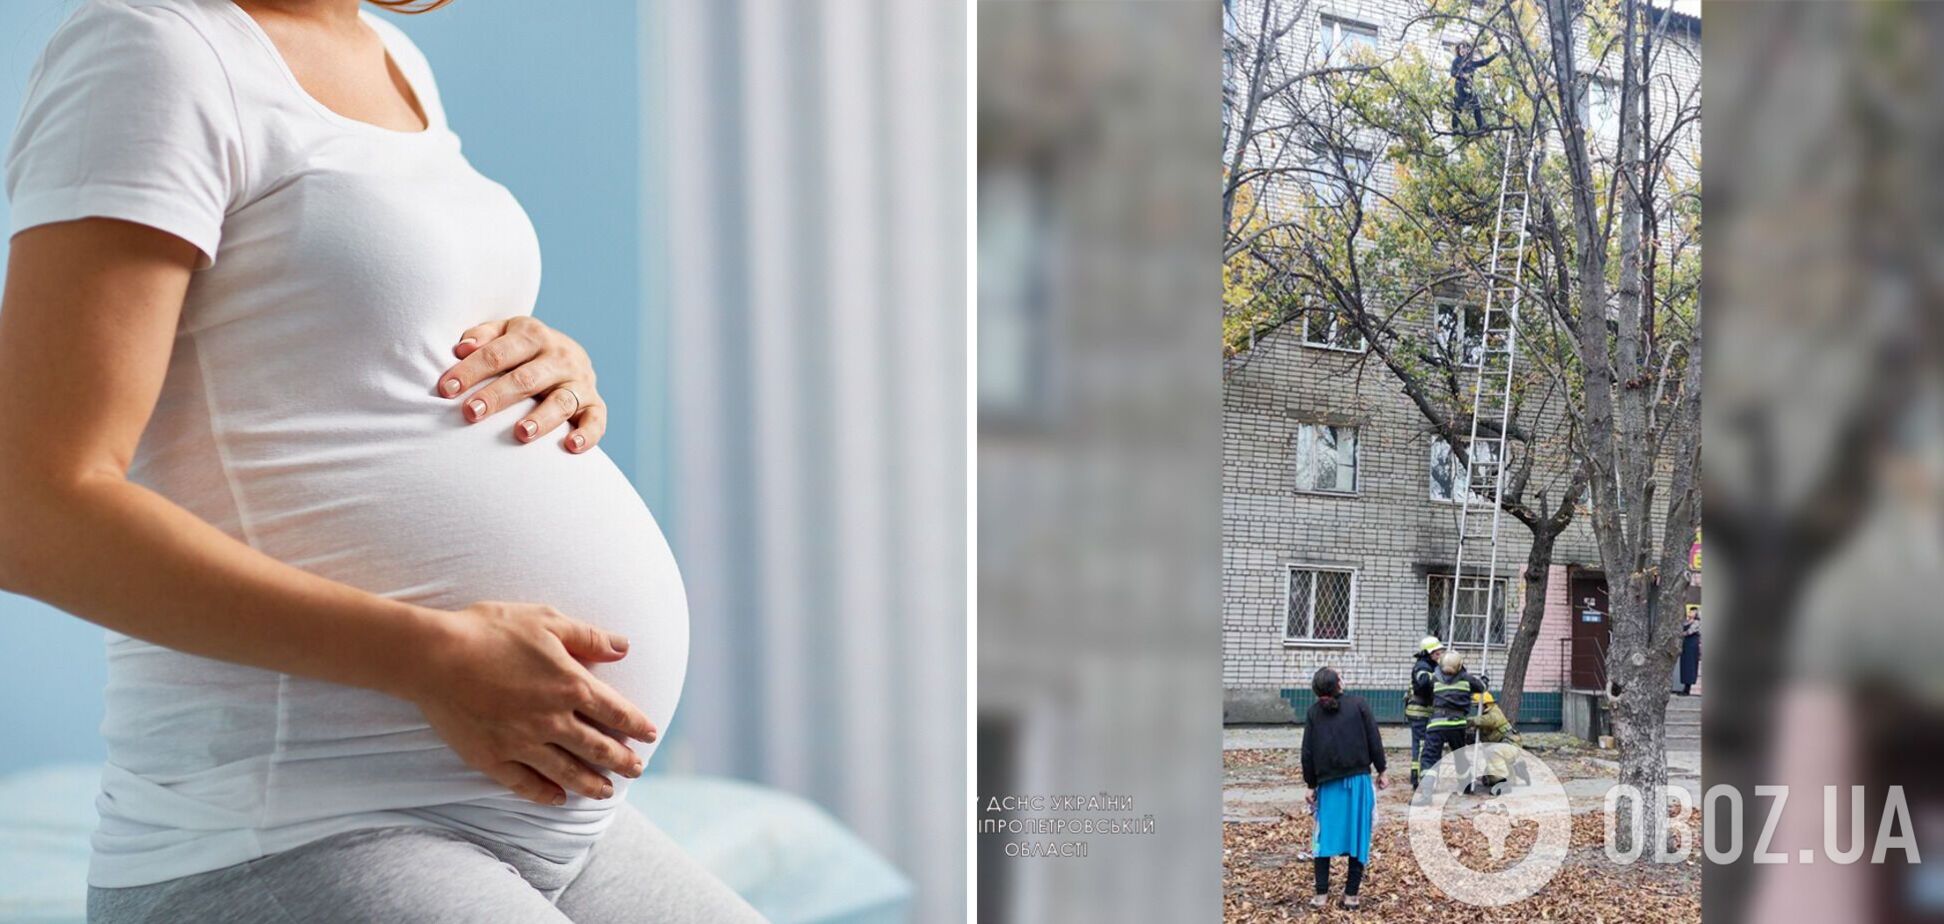 На Дніпропетровщині вагітна жінка залізла на дерево і застрягла